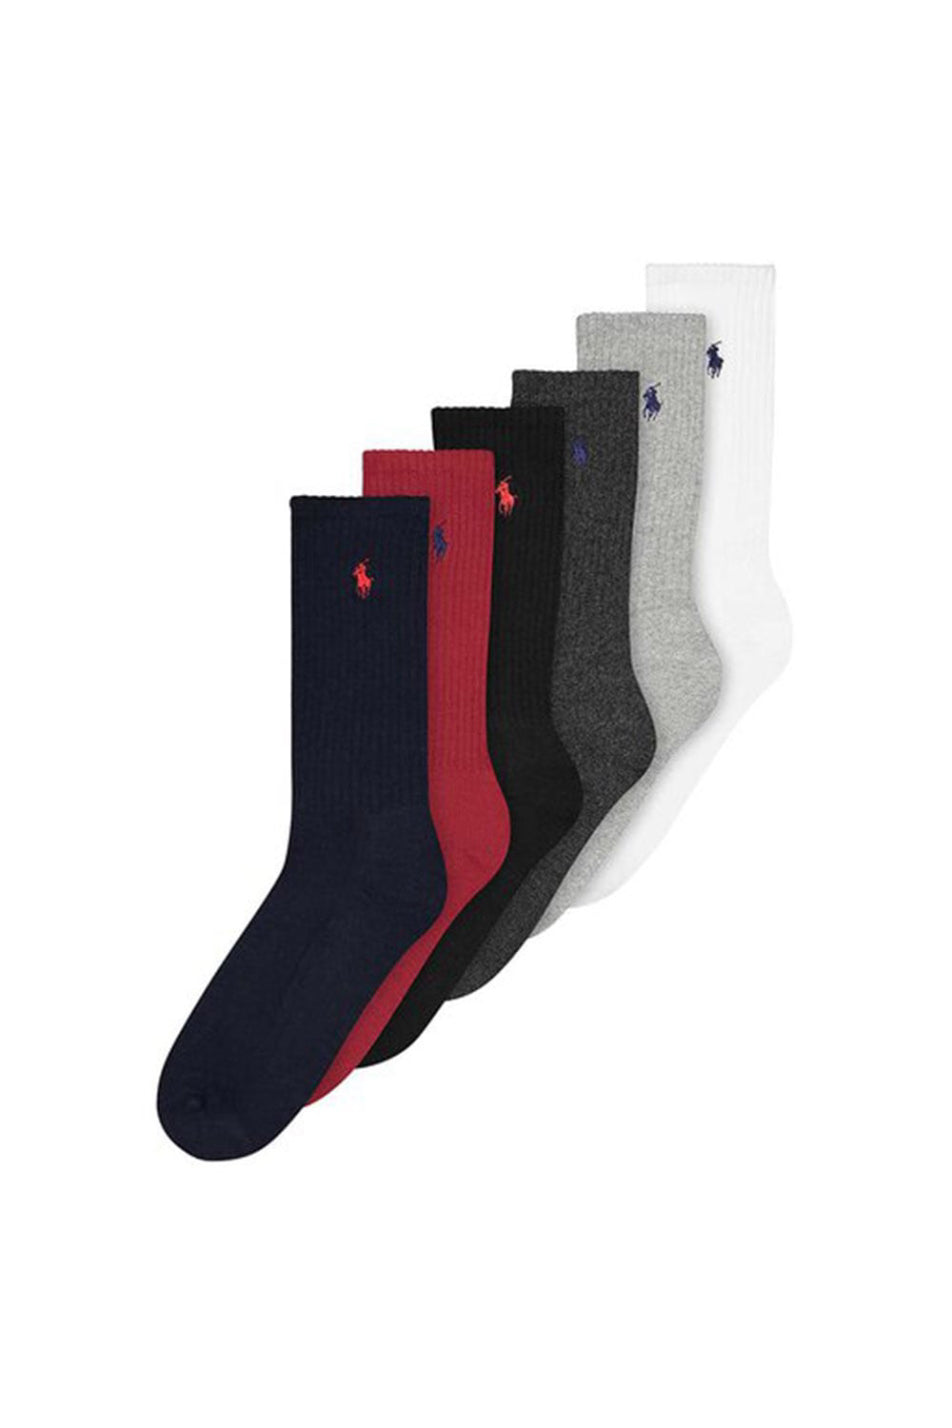 Polo Ralph Lauren Men's Crew Sock 6 Pack